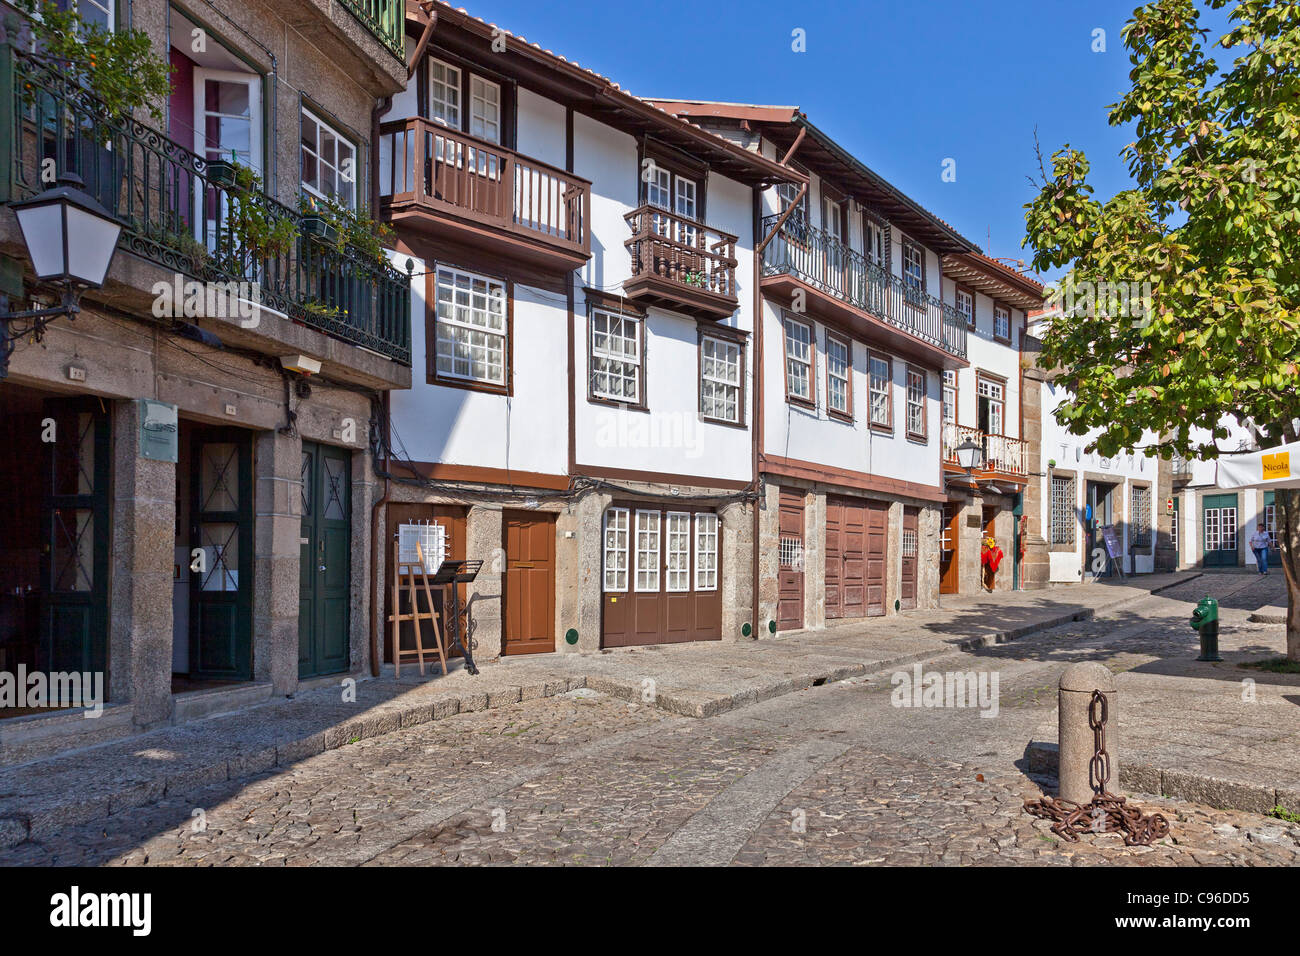 Santiago place médiévale (également connu sous le nom de Sao Tiago ou Sao Thiago) dans le centre historique de Guimaraes, Portugal. Patrimoine mondial Banque D'Images